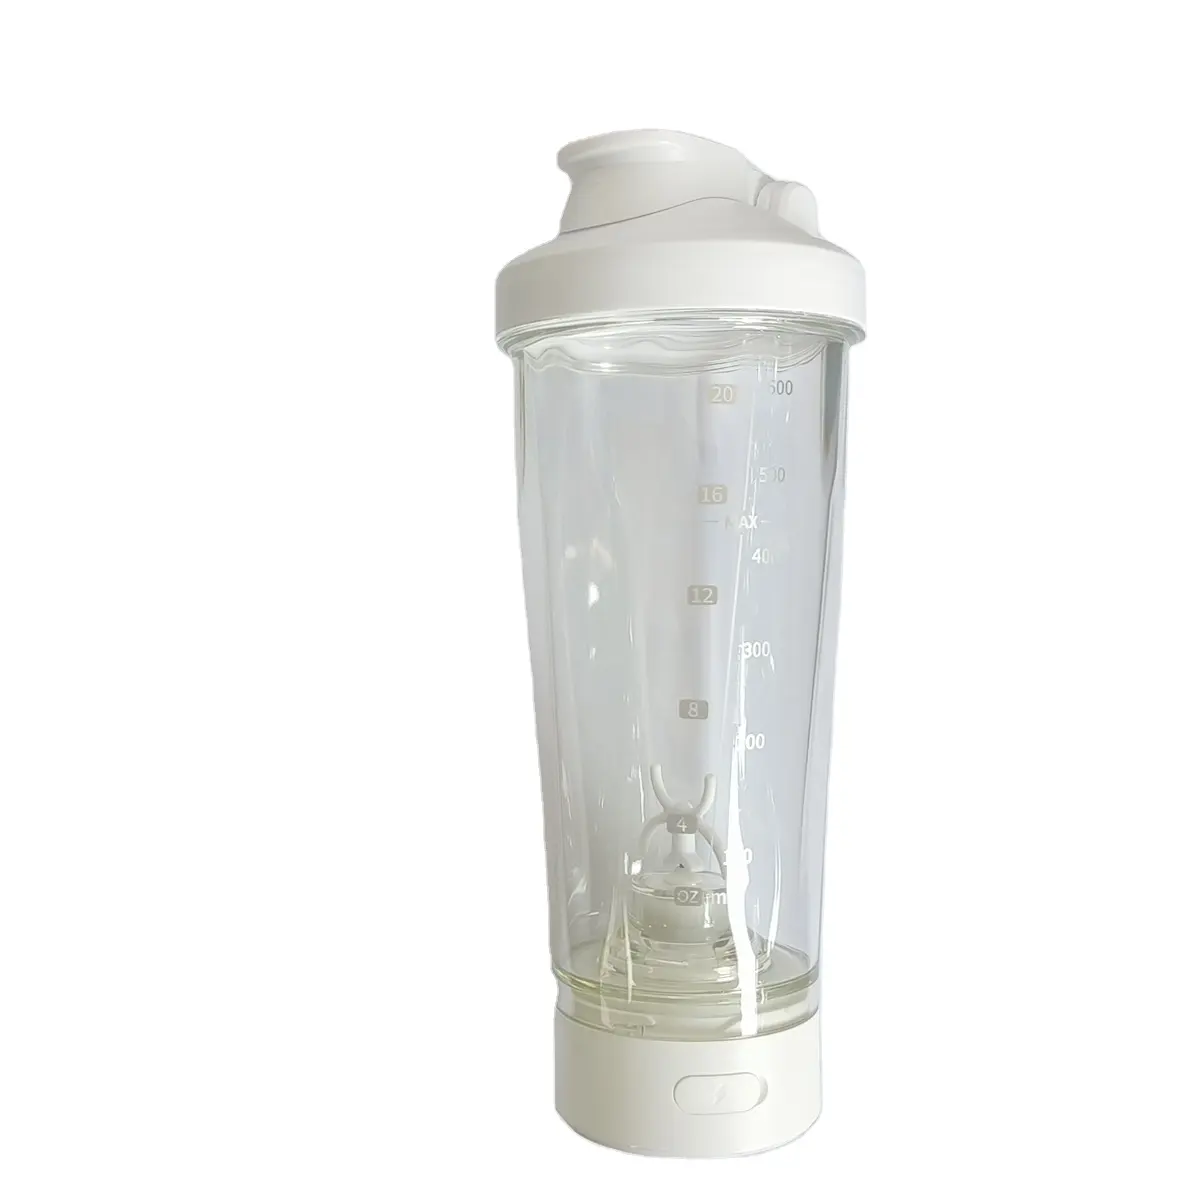 Tout neuf avec un bon prix shaker électrique nouveau design avec une bouteille de shaker de protéines électrique voltrx premium de haute qualité